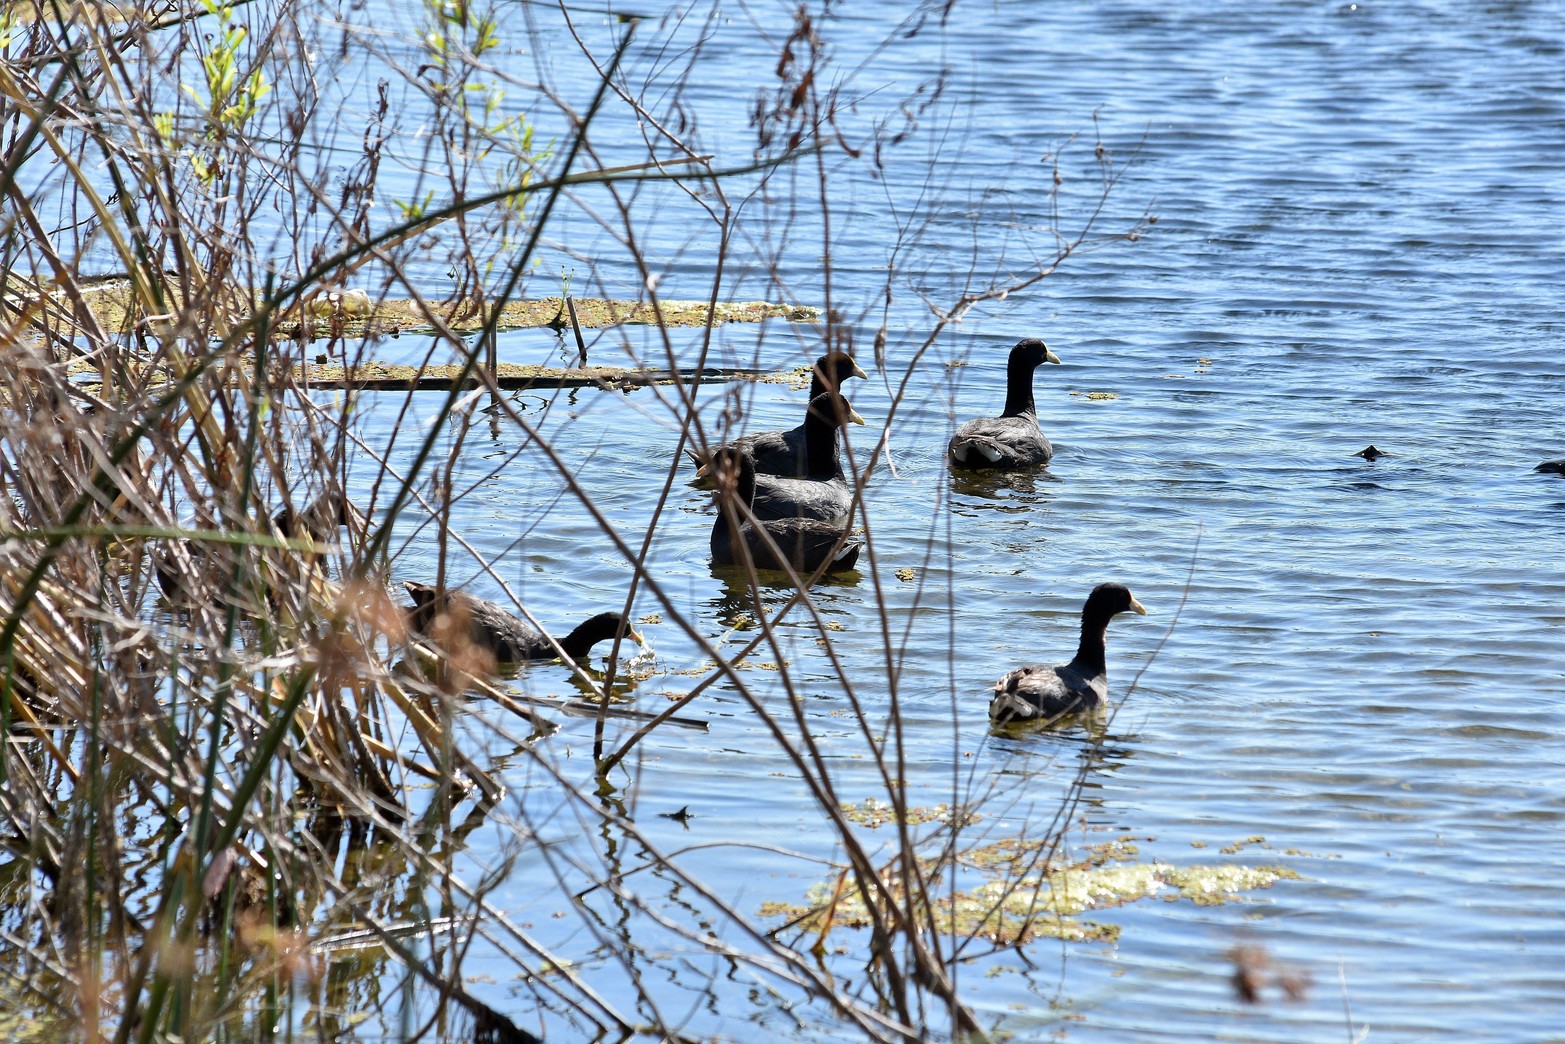 Los patos son otro de los atractivos naturales del lago.